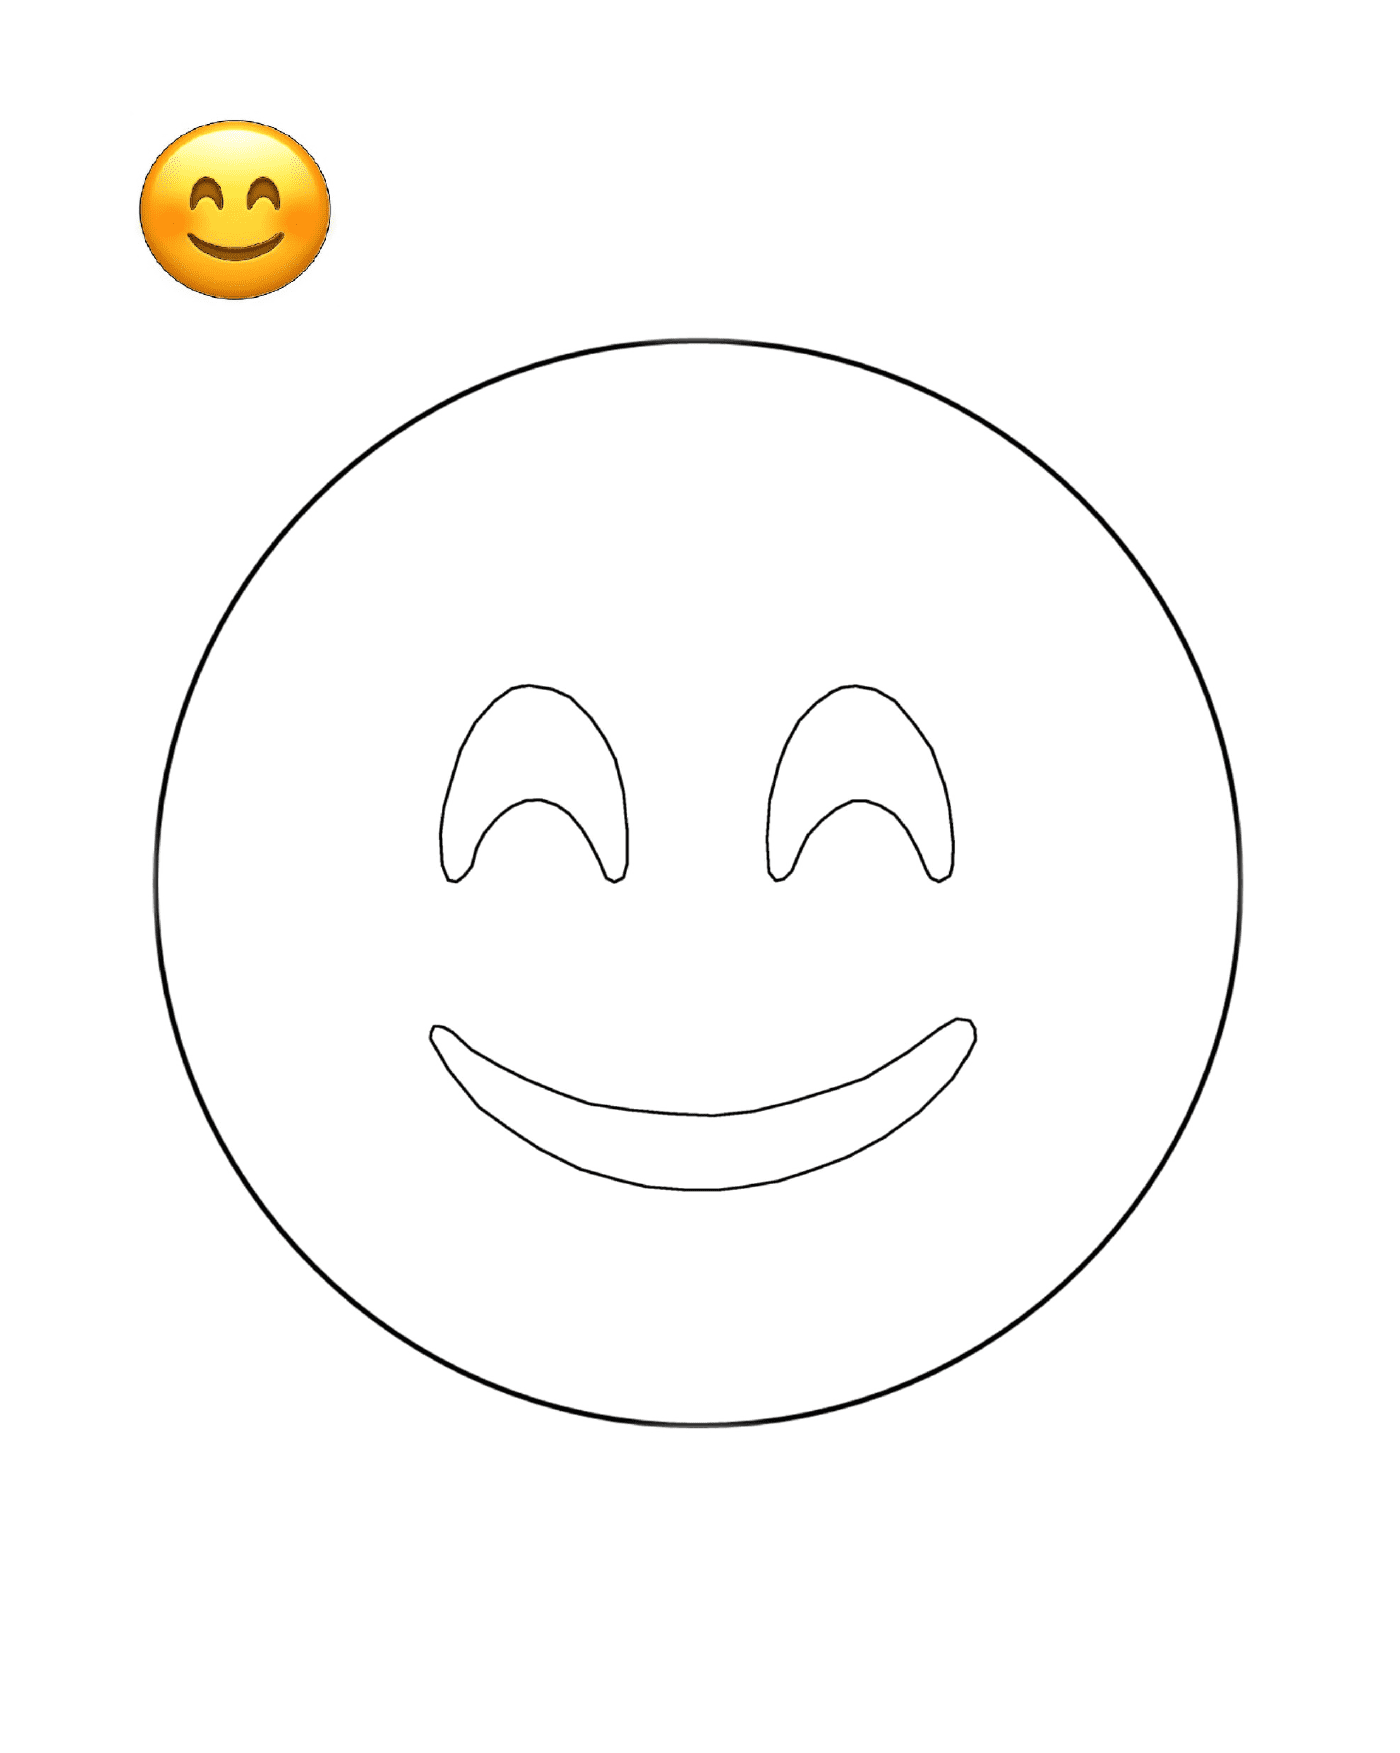   Un visage souriant est dessiné 